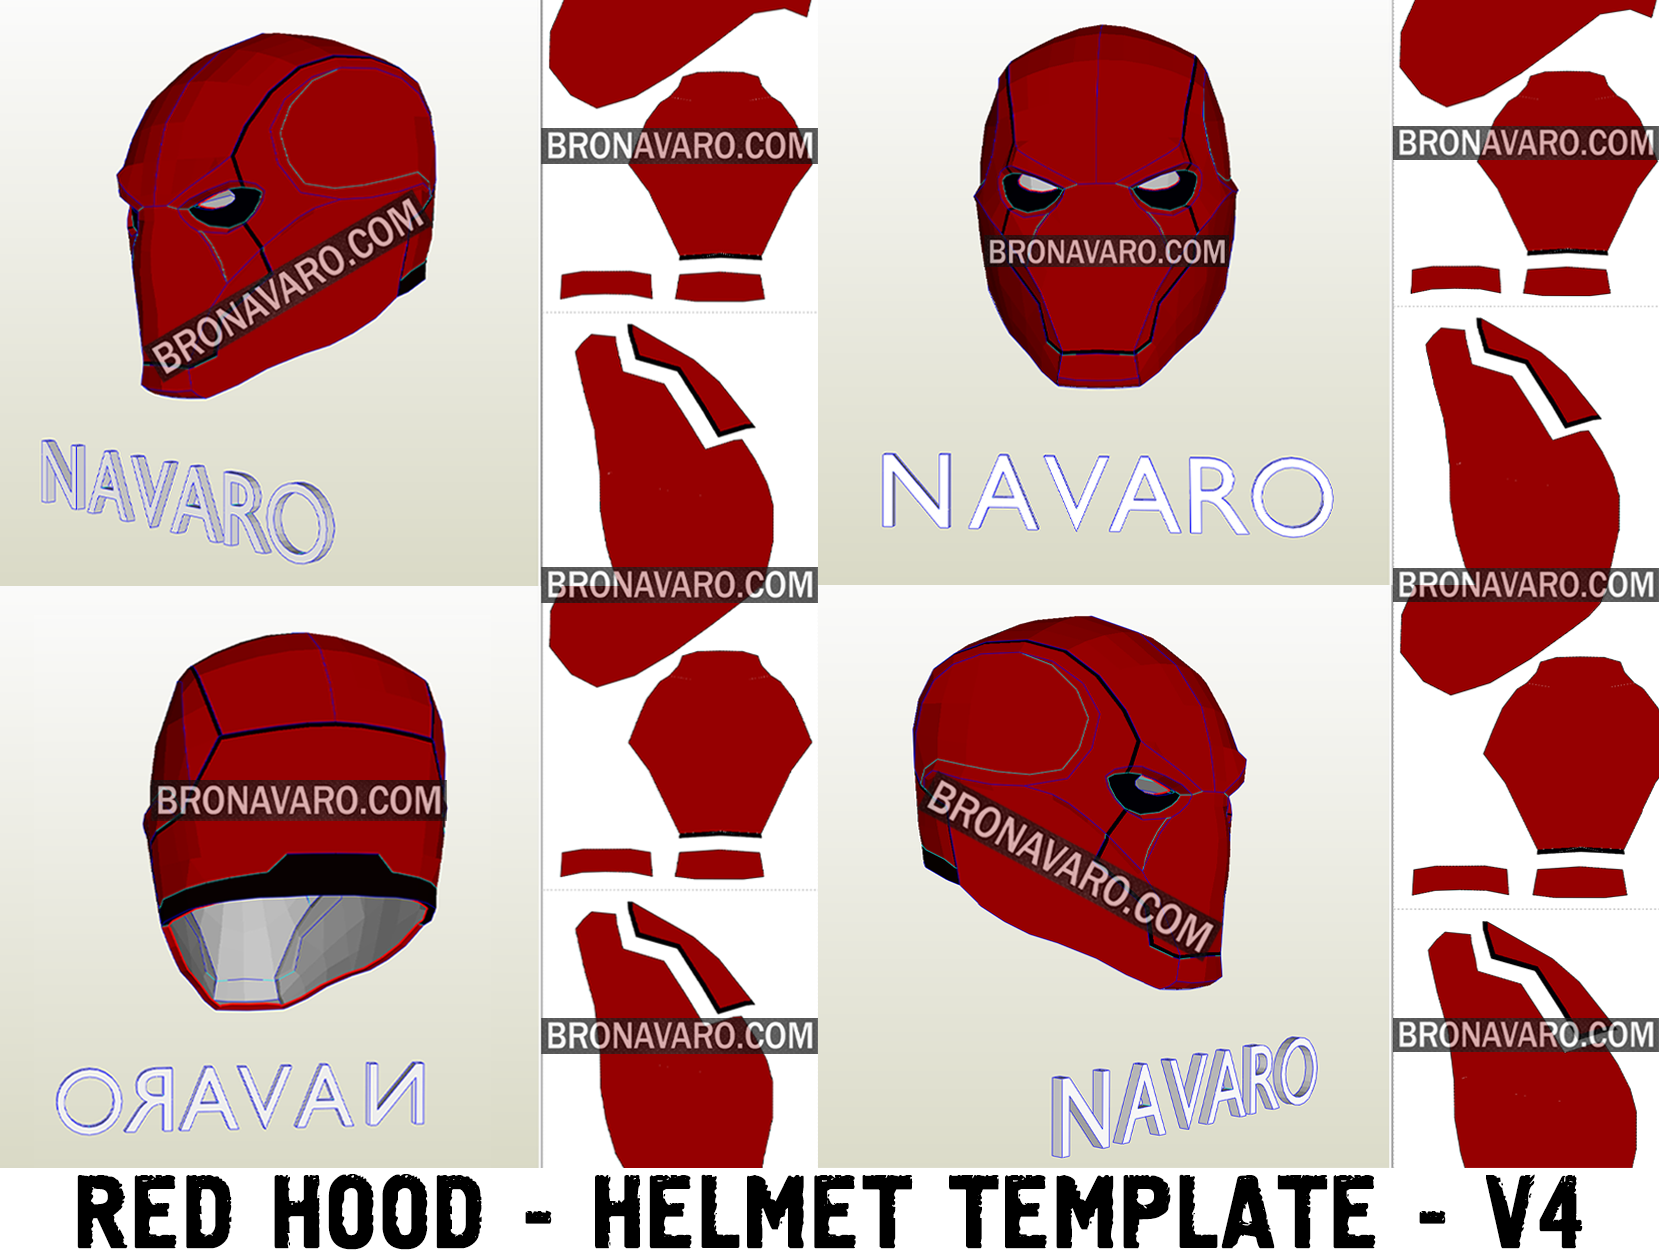 red-hood-helmet-foam-template-red-hood-pepakura-by-bro-navaro-on-deviantart